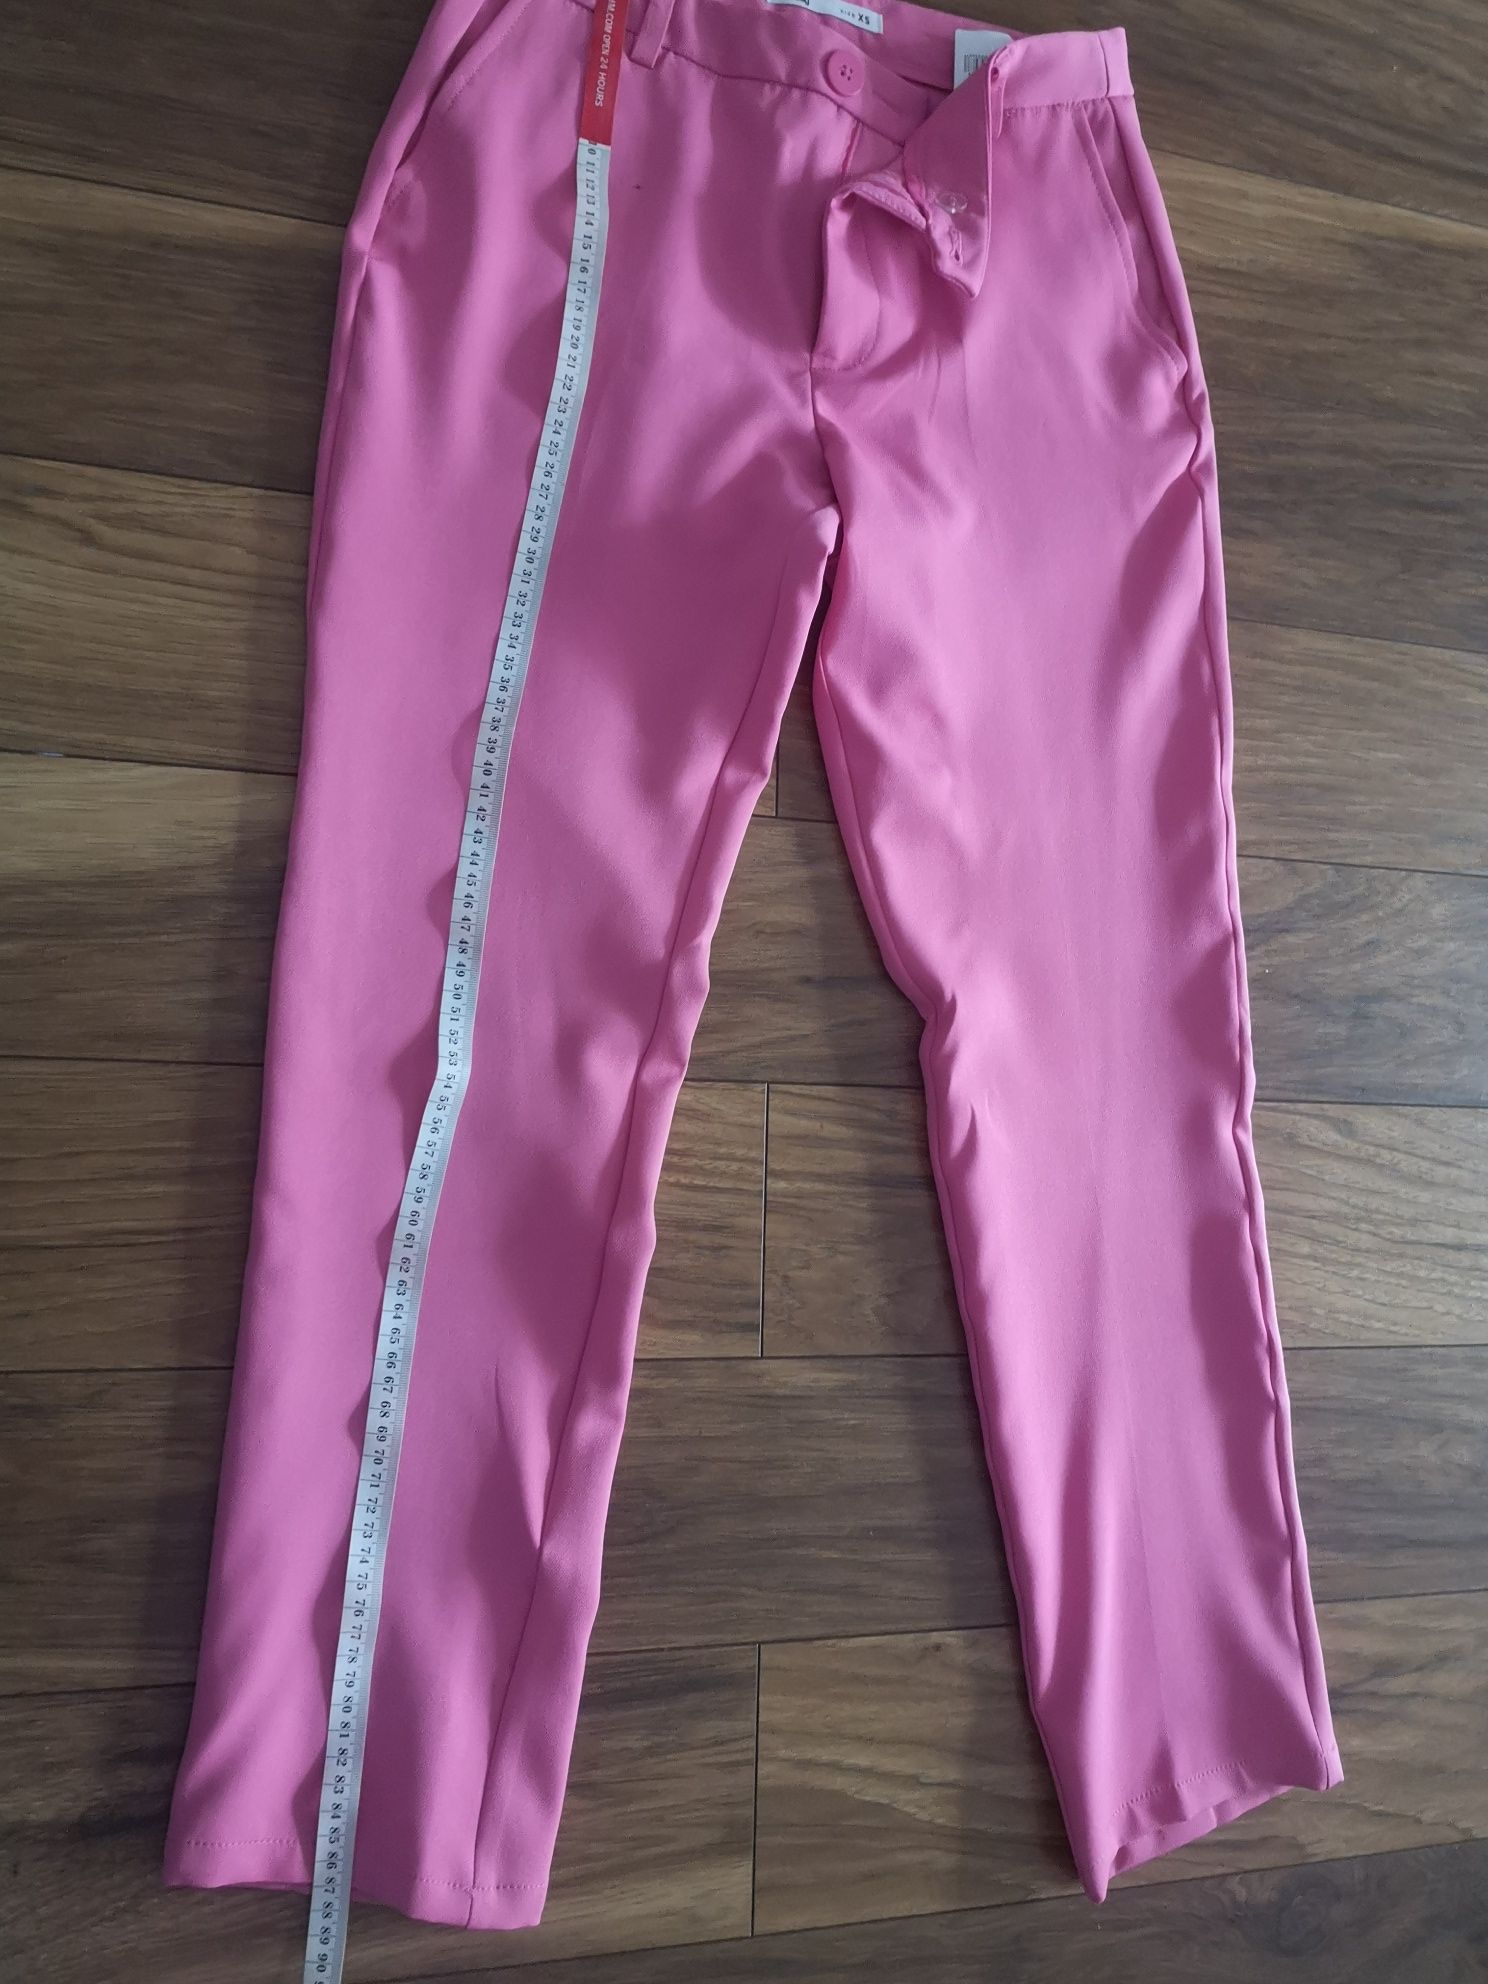 Spodnie chinos materiałowe różowe sinsay XS nowe